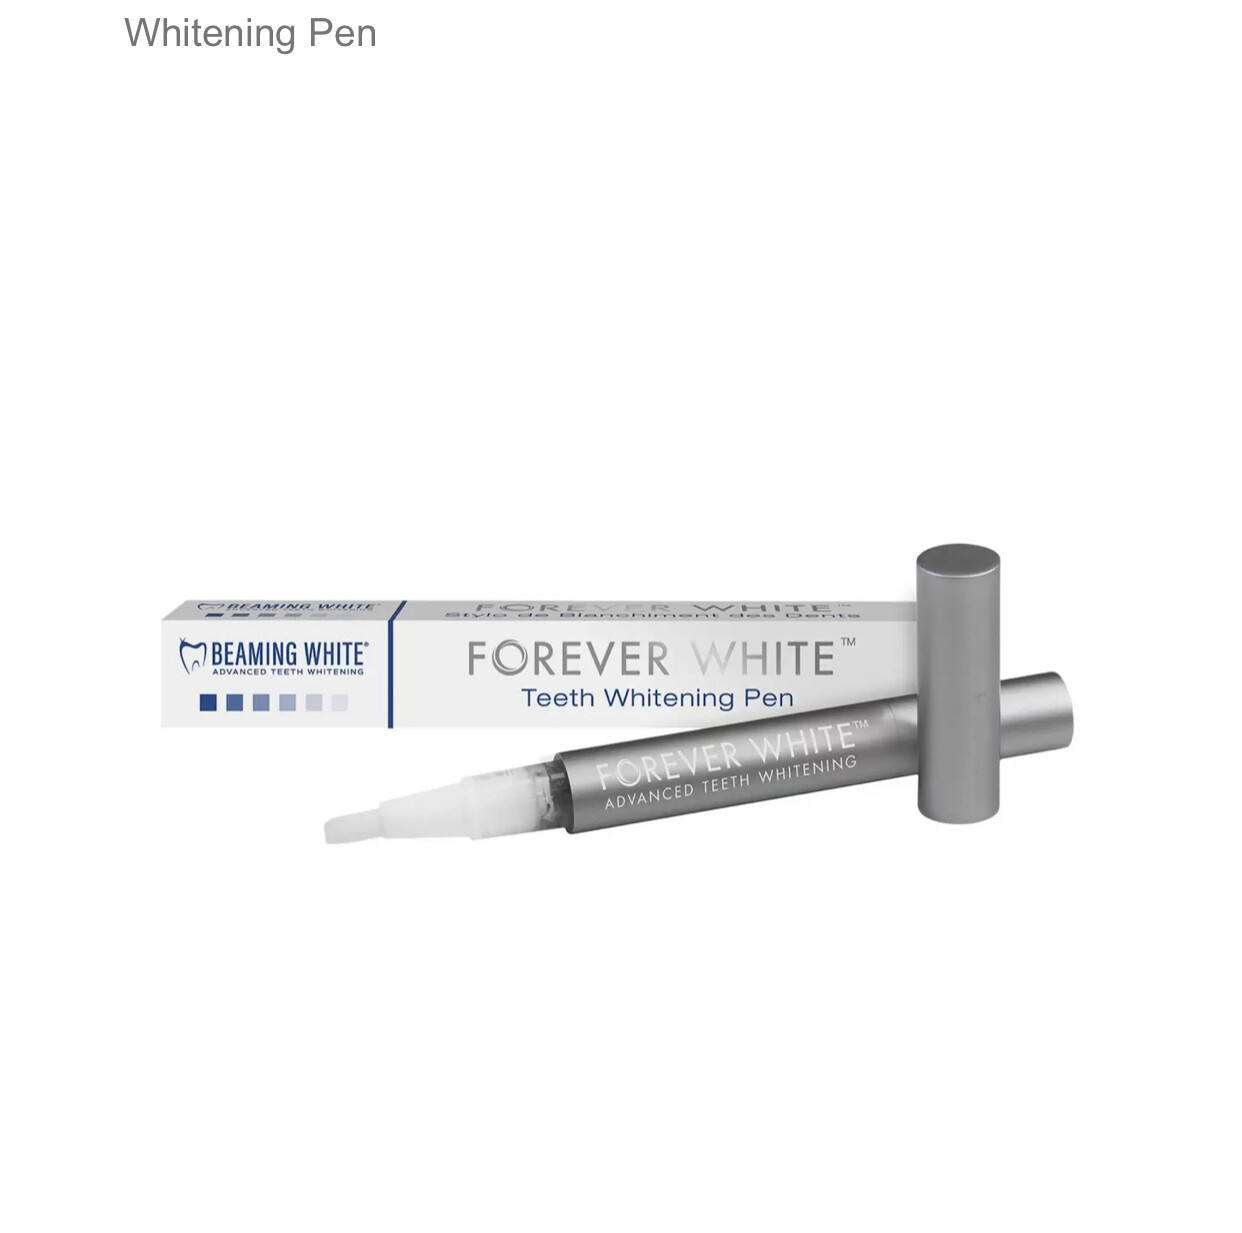 Forever White Teeth Whitening Pen